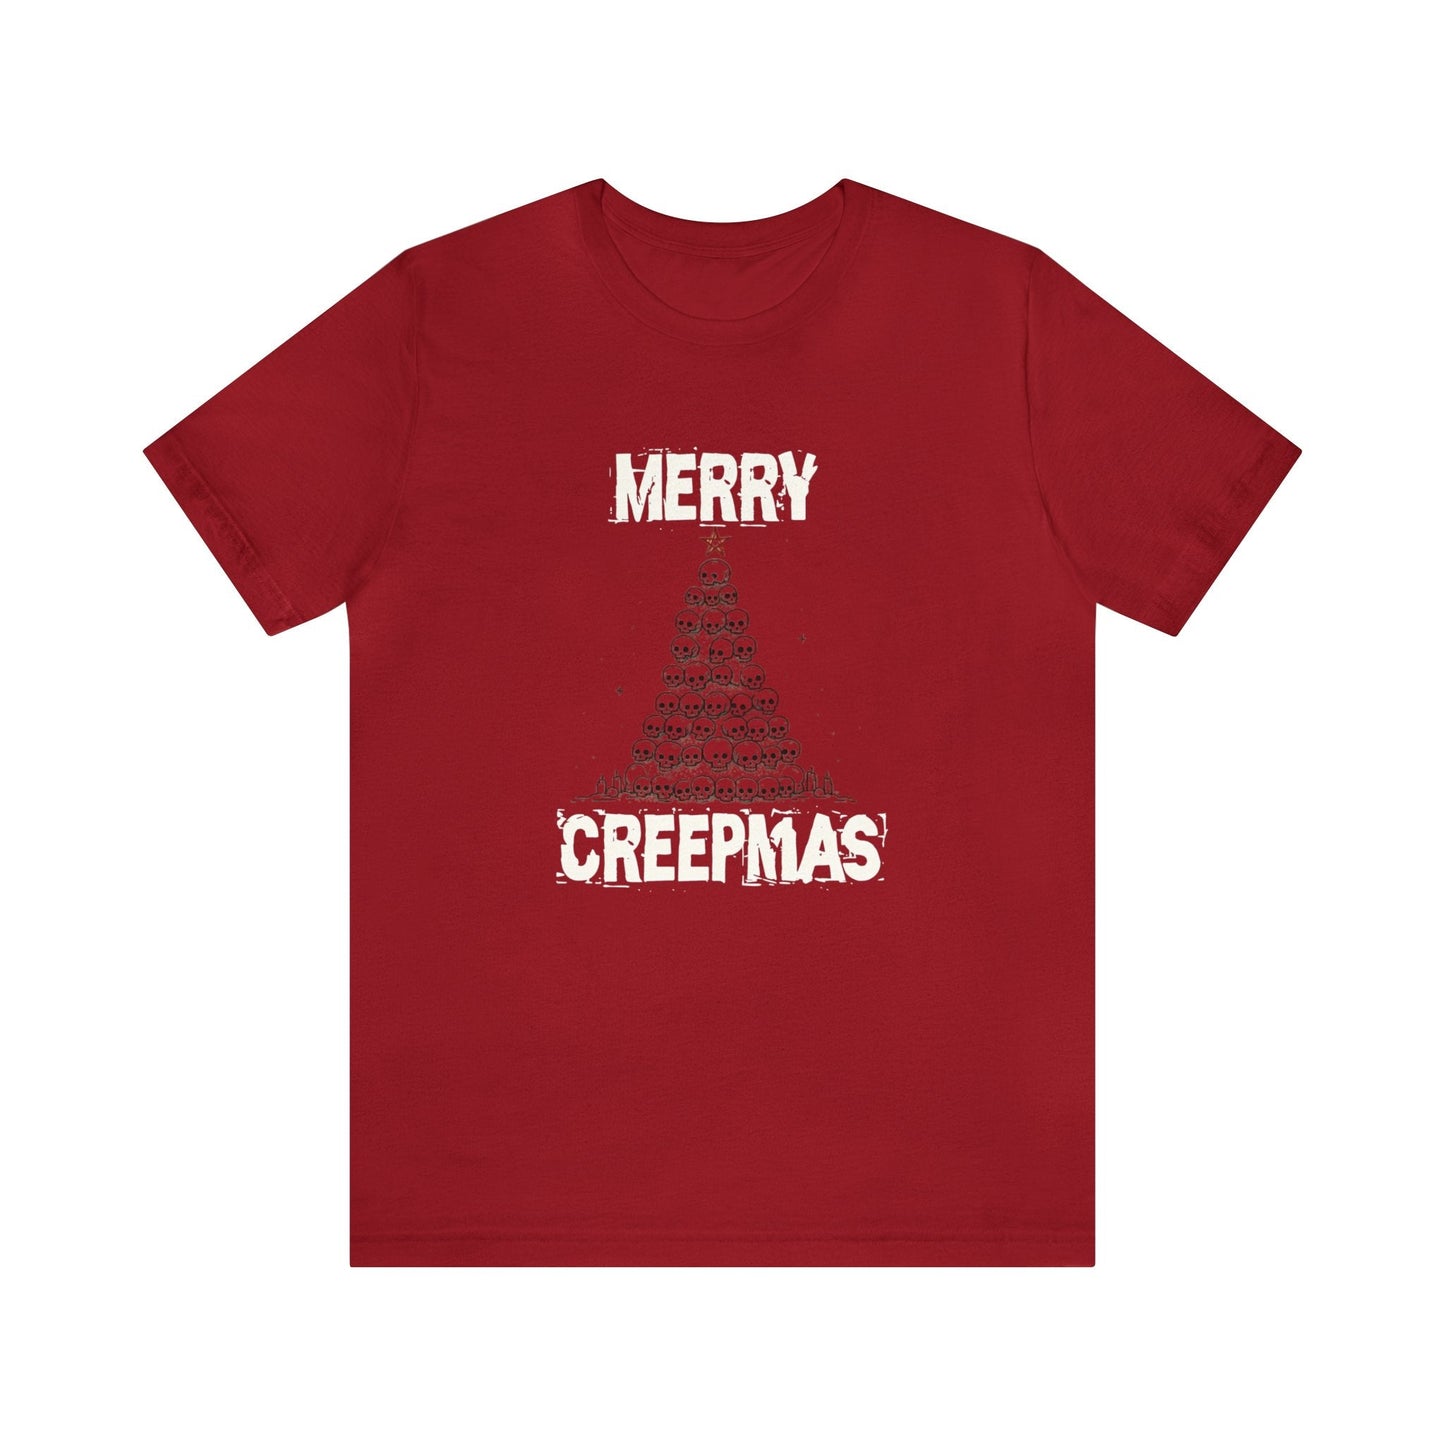 Merry Creepmas Short Sleeve Tee ShirtT - ShirtVTZdesignsCanvas RedXSchristmasclothingCotton